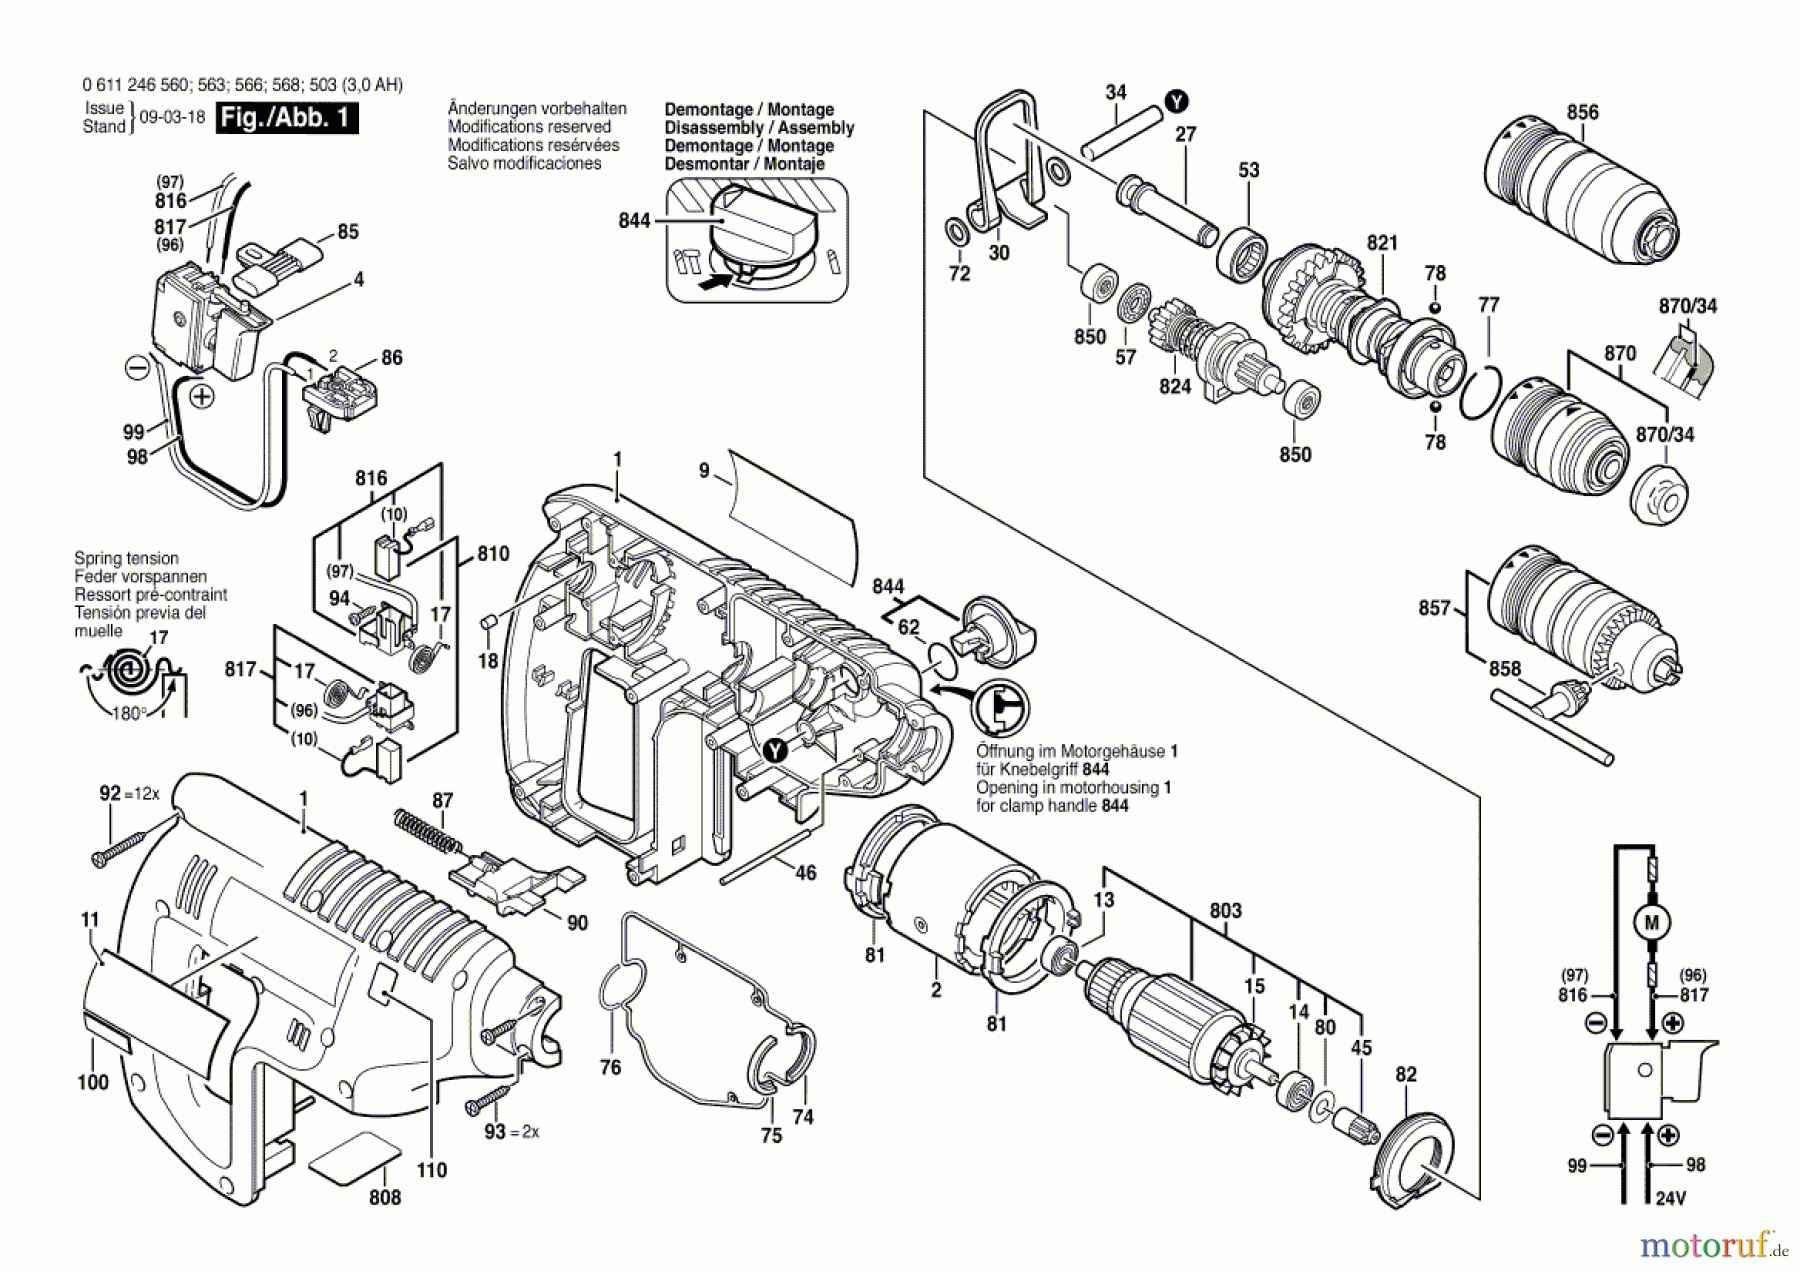  Bosch Werkzeug Bohrhammer GBH 24 VFR Seite 1